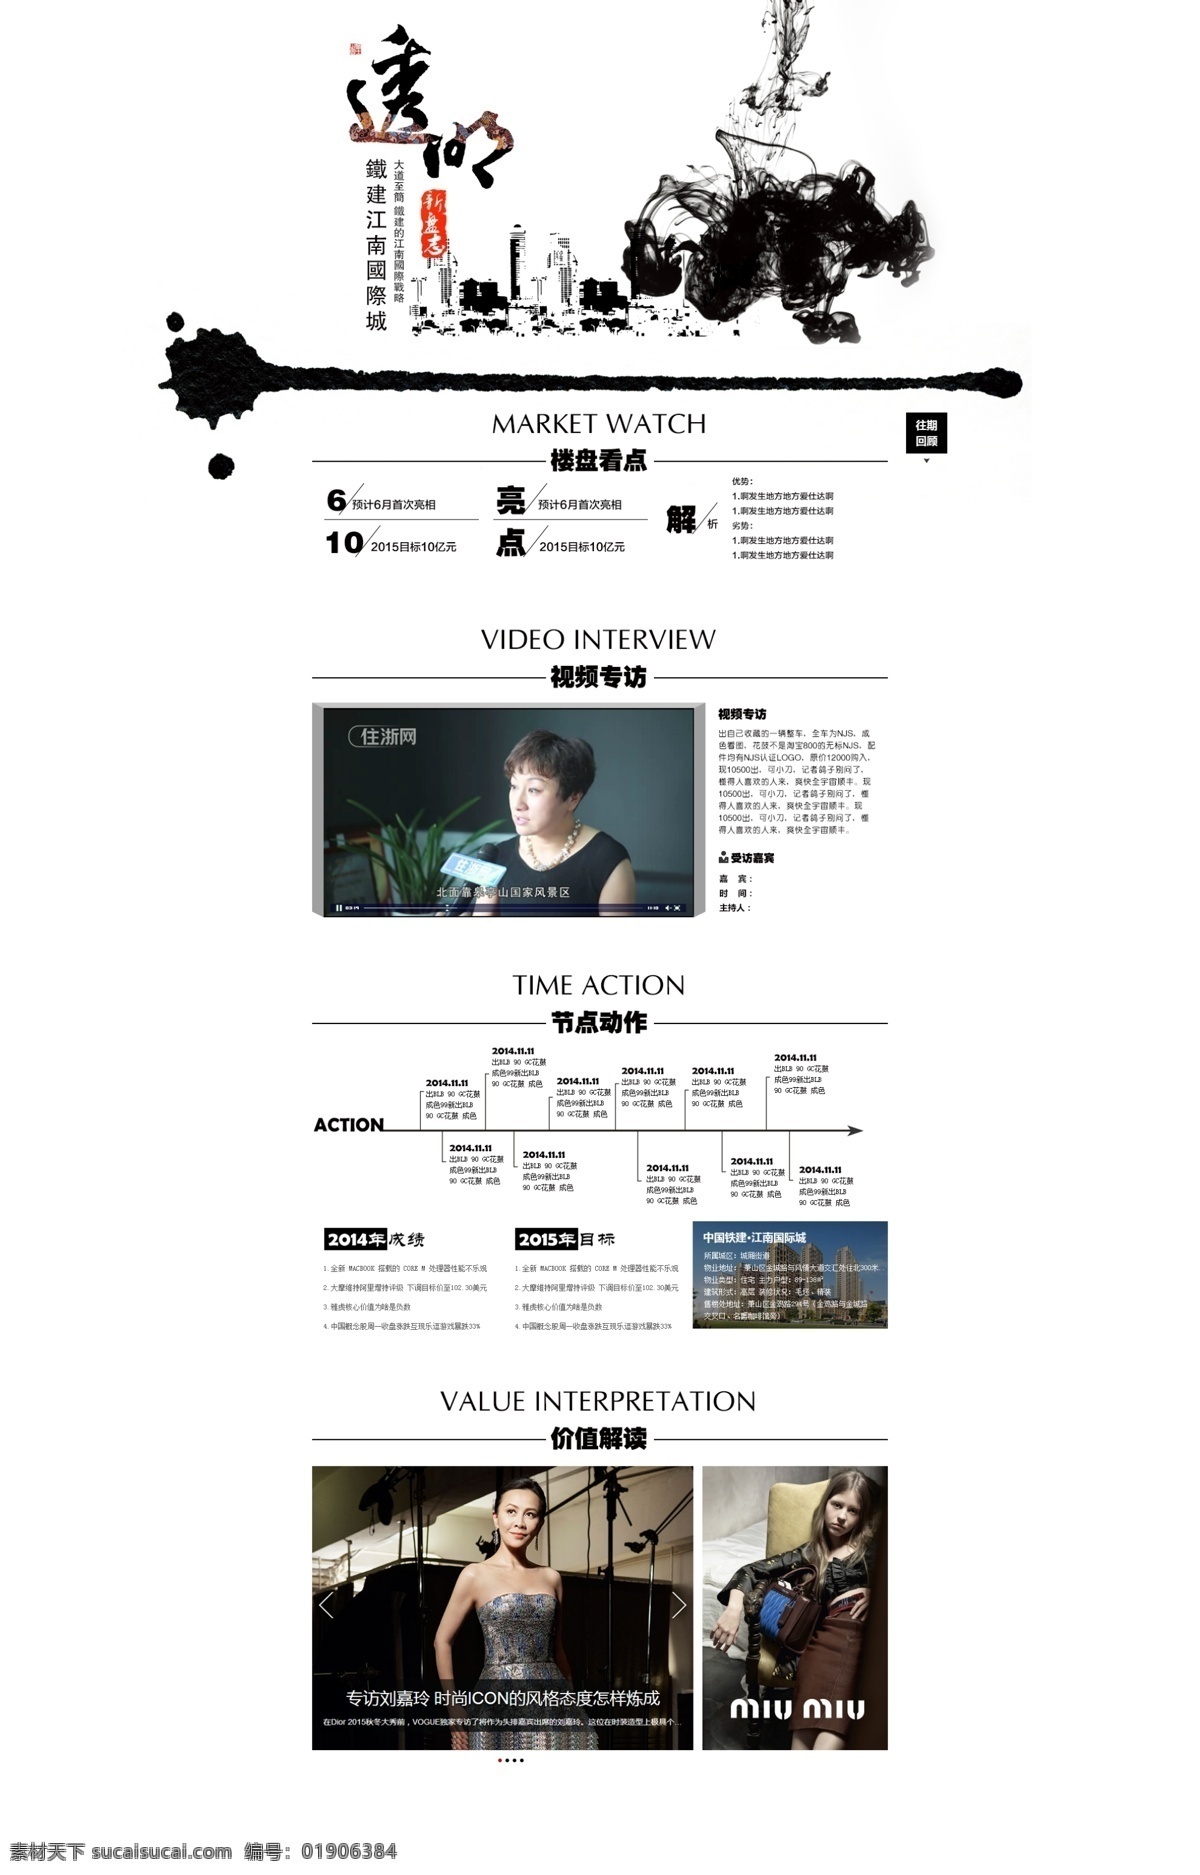 中国 风 网页模板 建筑 banner 公司网页 黑白 水墨 透明 中国风 专题 简洁 web 界面设计 中文模板